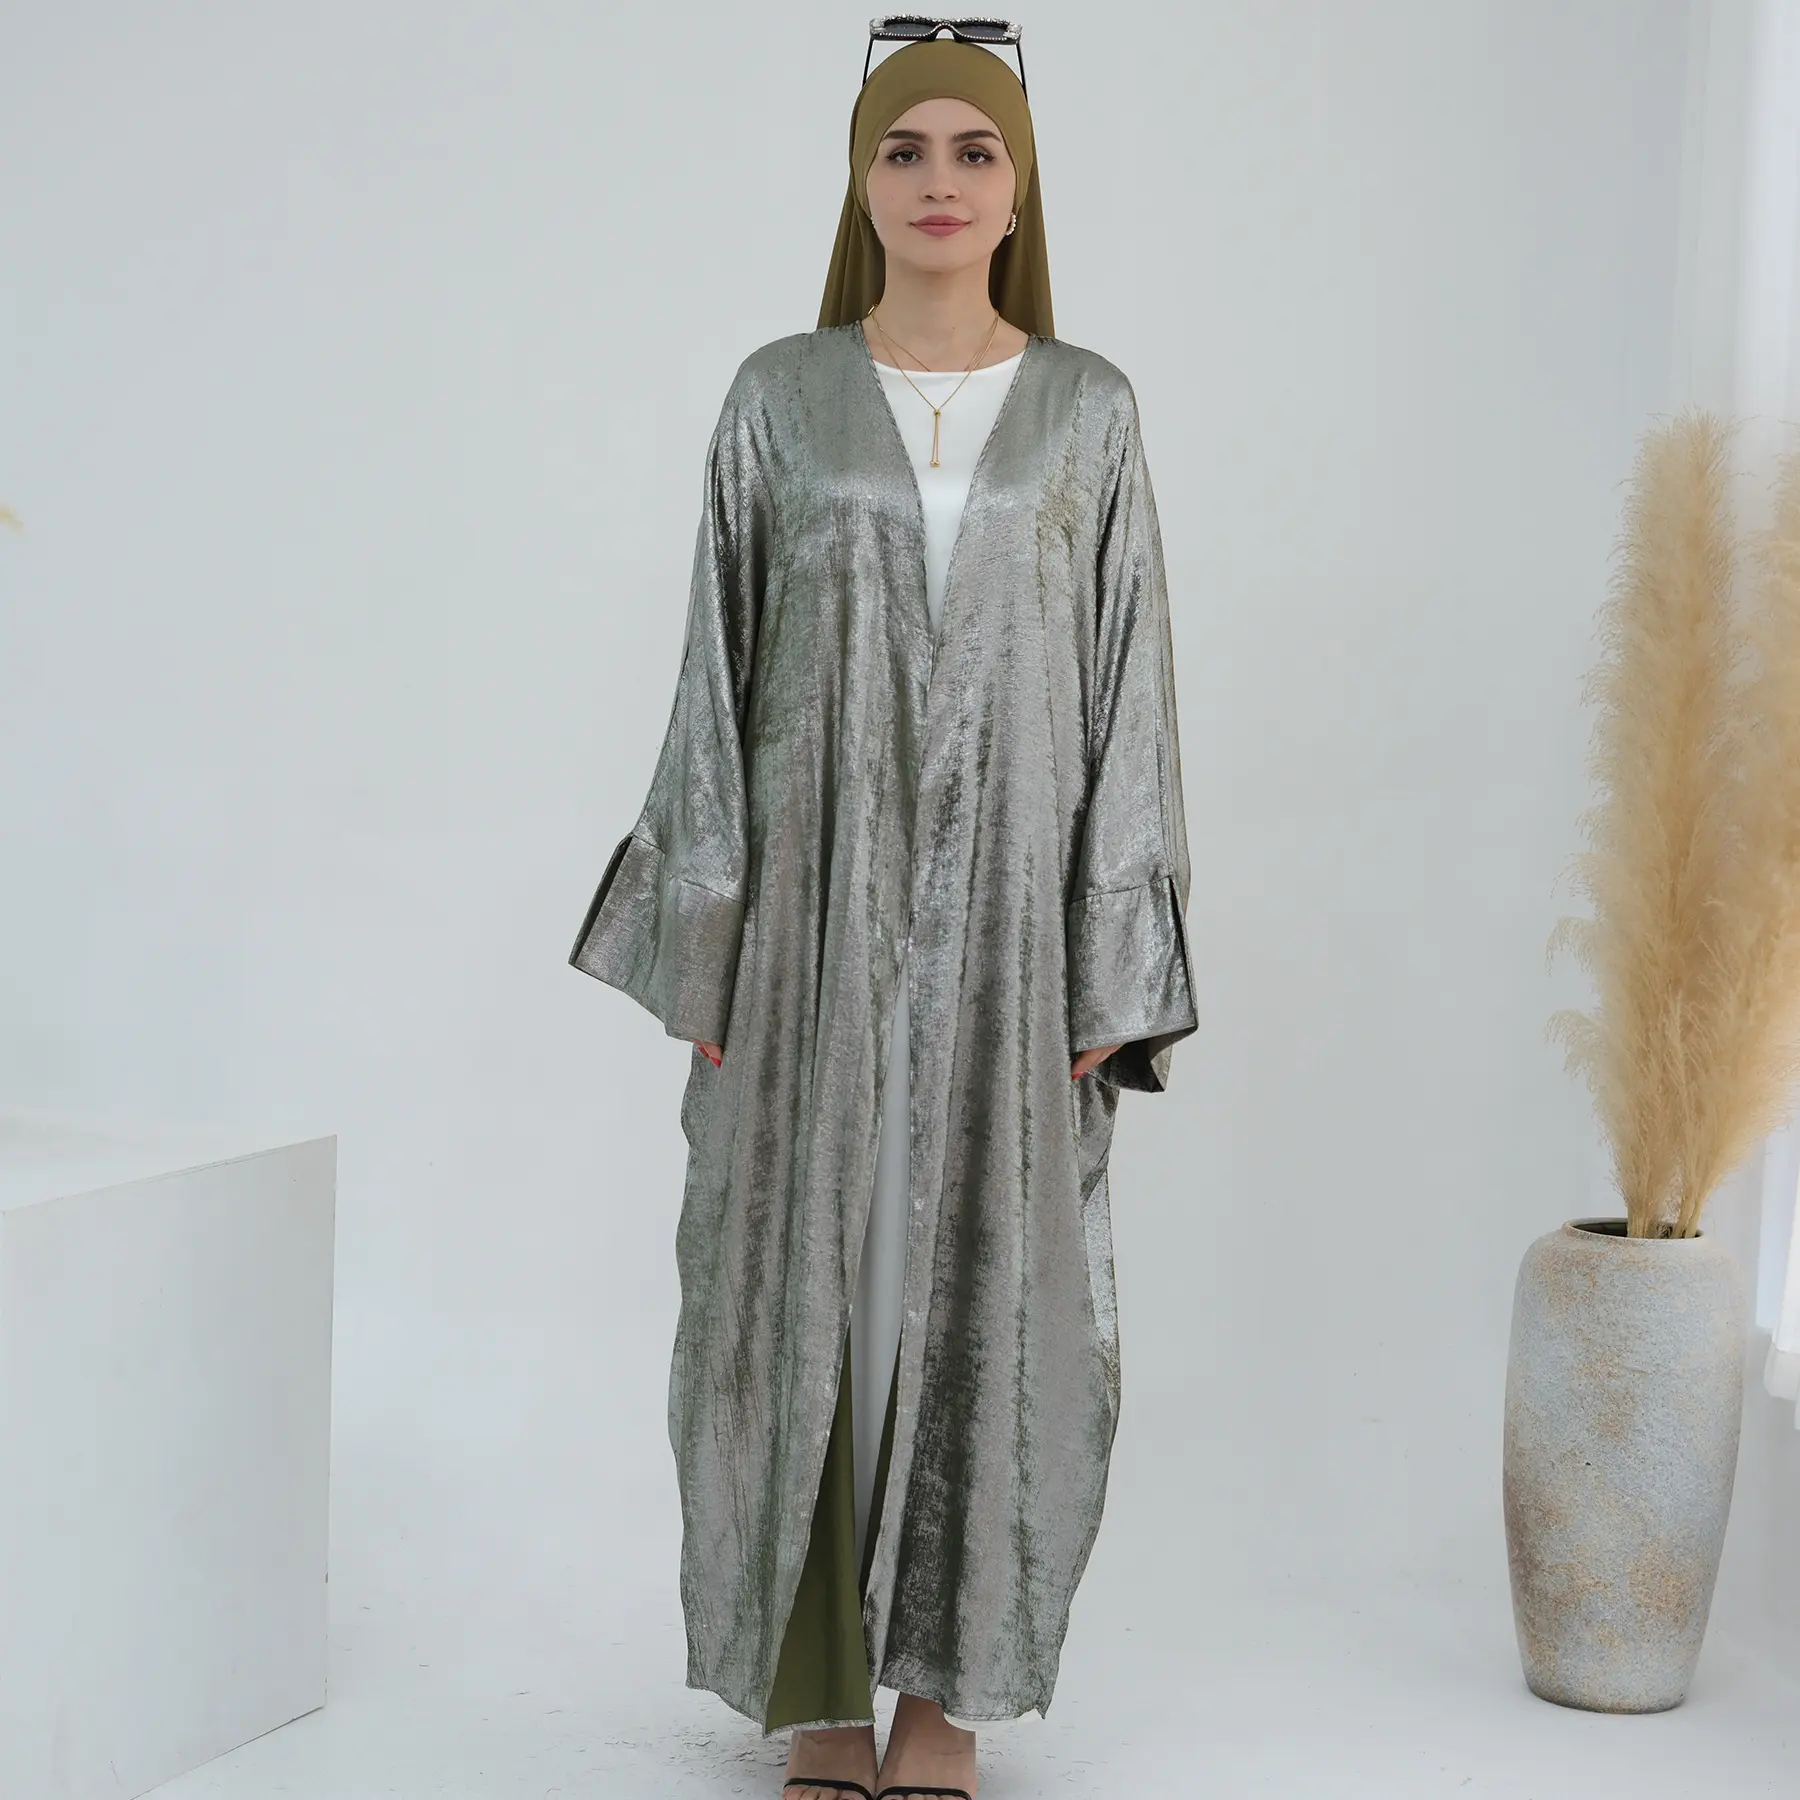 411 Neuester arabischer langer offener abaya Kimono Mantel für Damen muslimisches Kleid Dubai traditionelle muslimische Kleidung und Zubehör